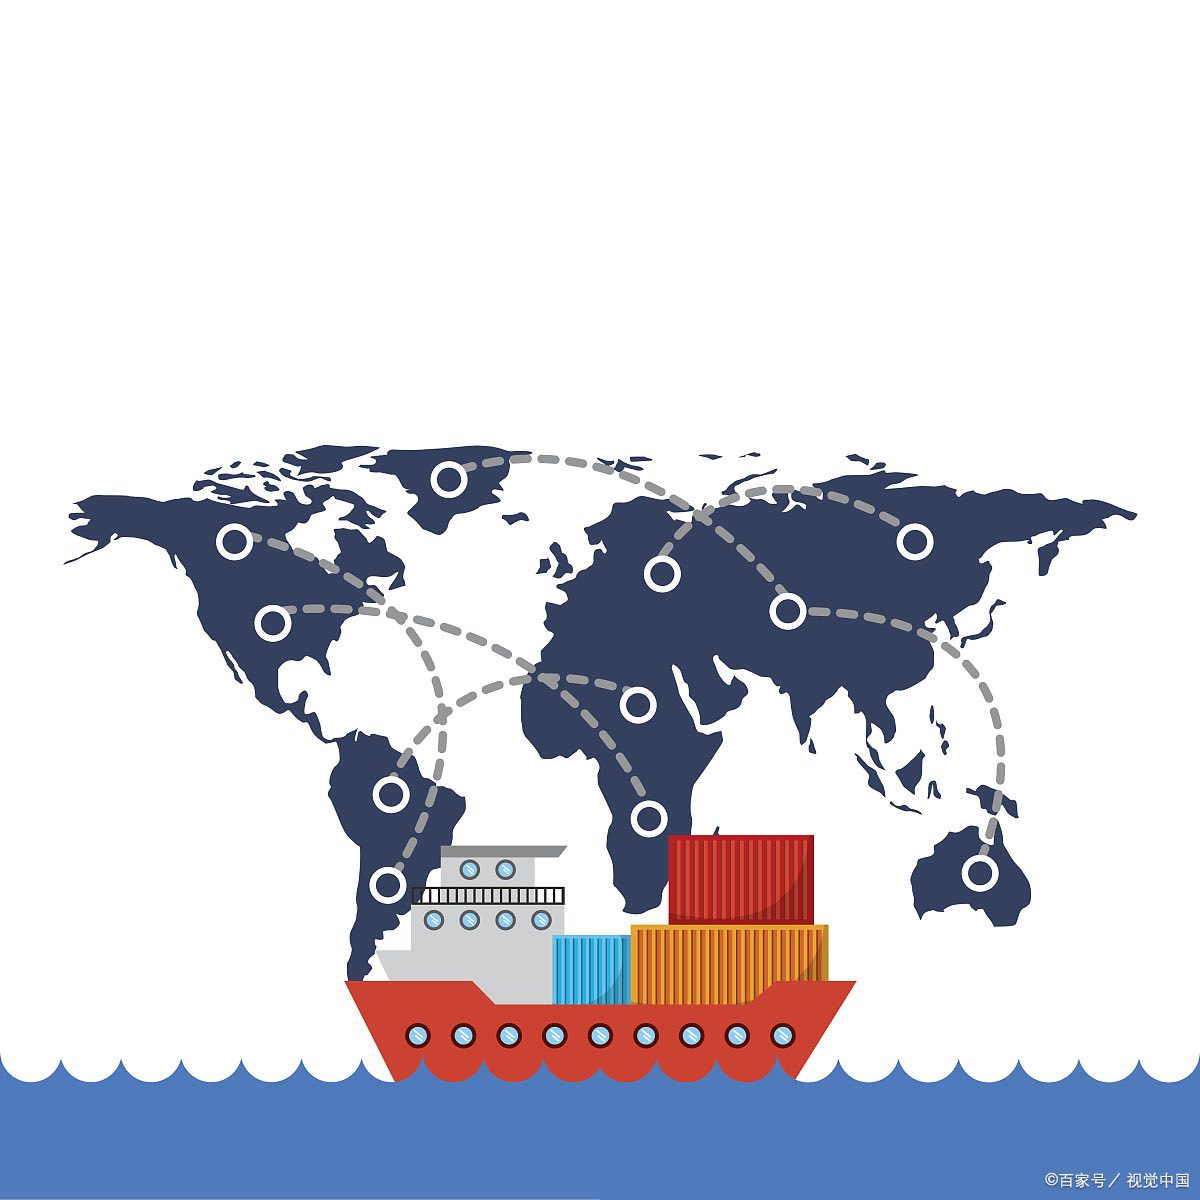 公式定价方法指南：在国际贸易中的应用和要求